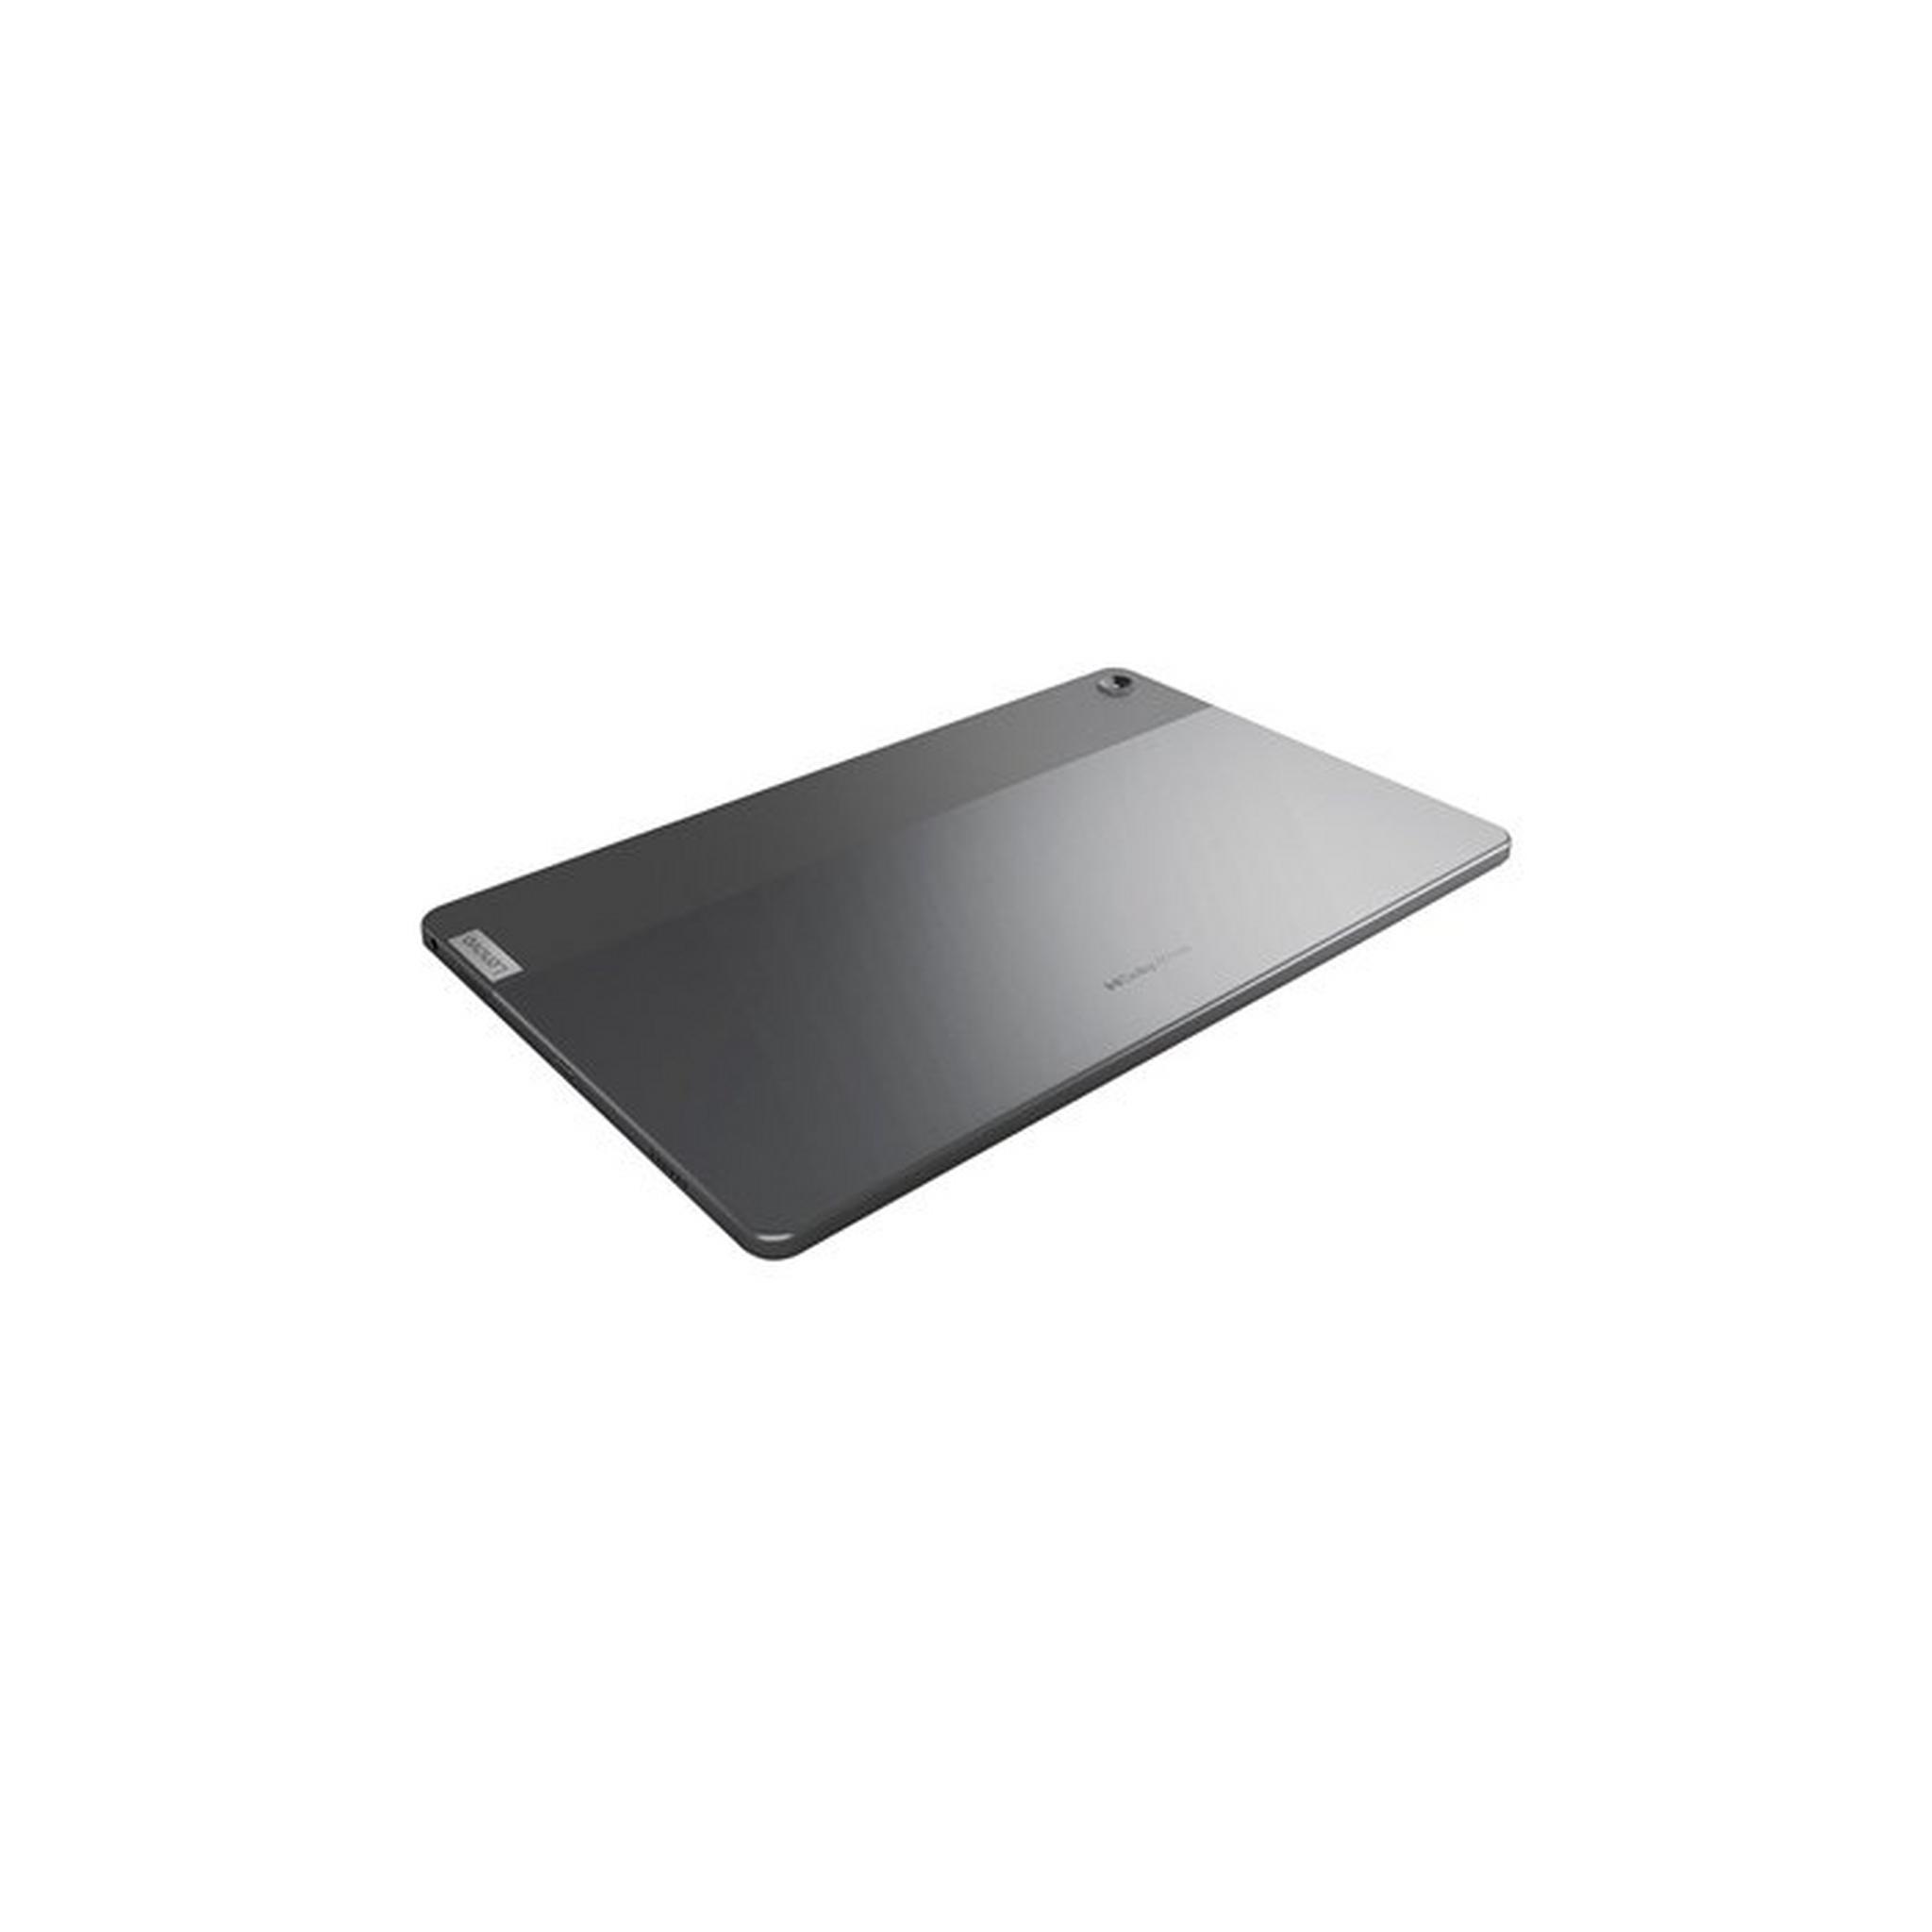 Lenovo Tab M10 10.1" inch 64GB WiFi + 4G-LTE Android 11 ZAAF0058AE - Grey